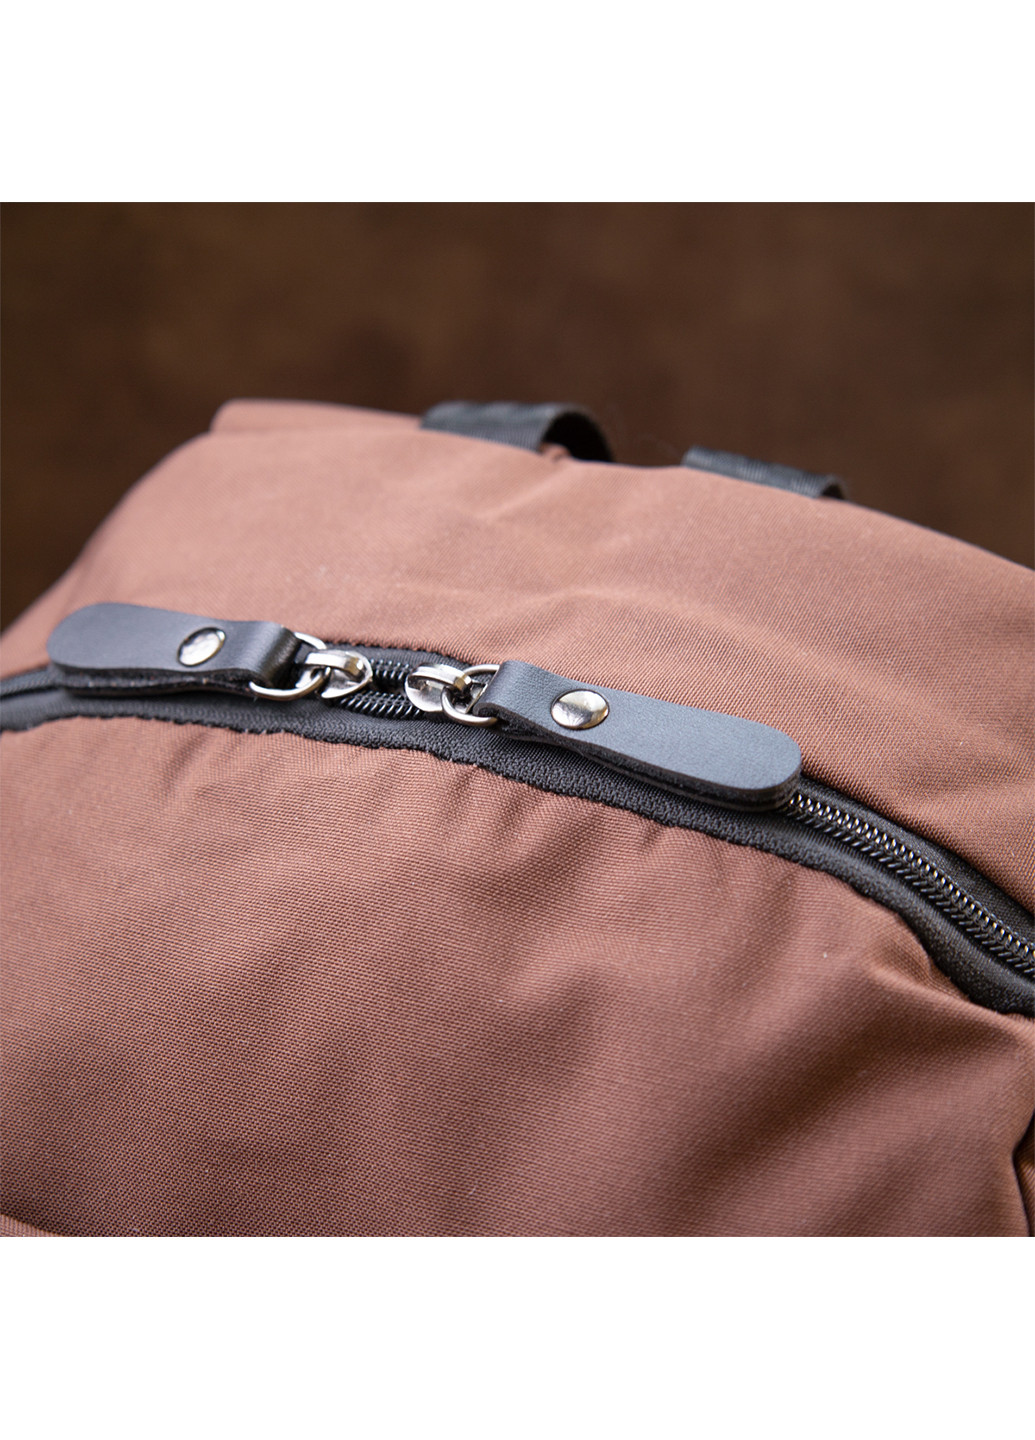 Текстильний рюкзак 31х45,5х12,5 см Vintage (242188071)